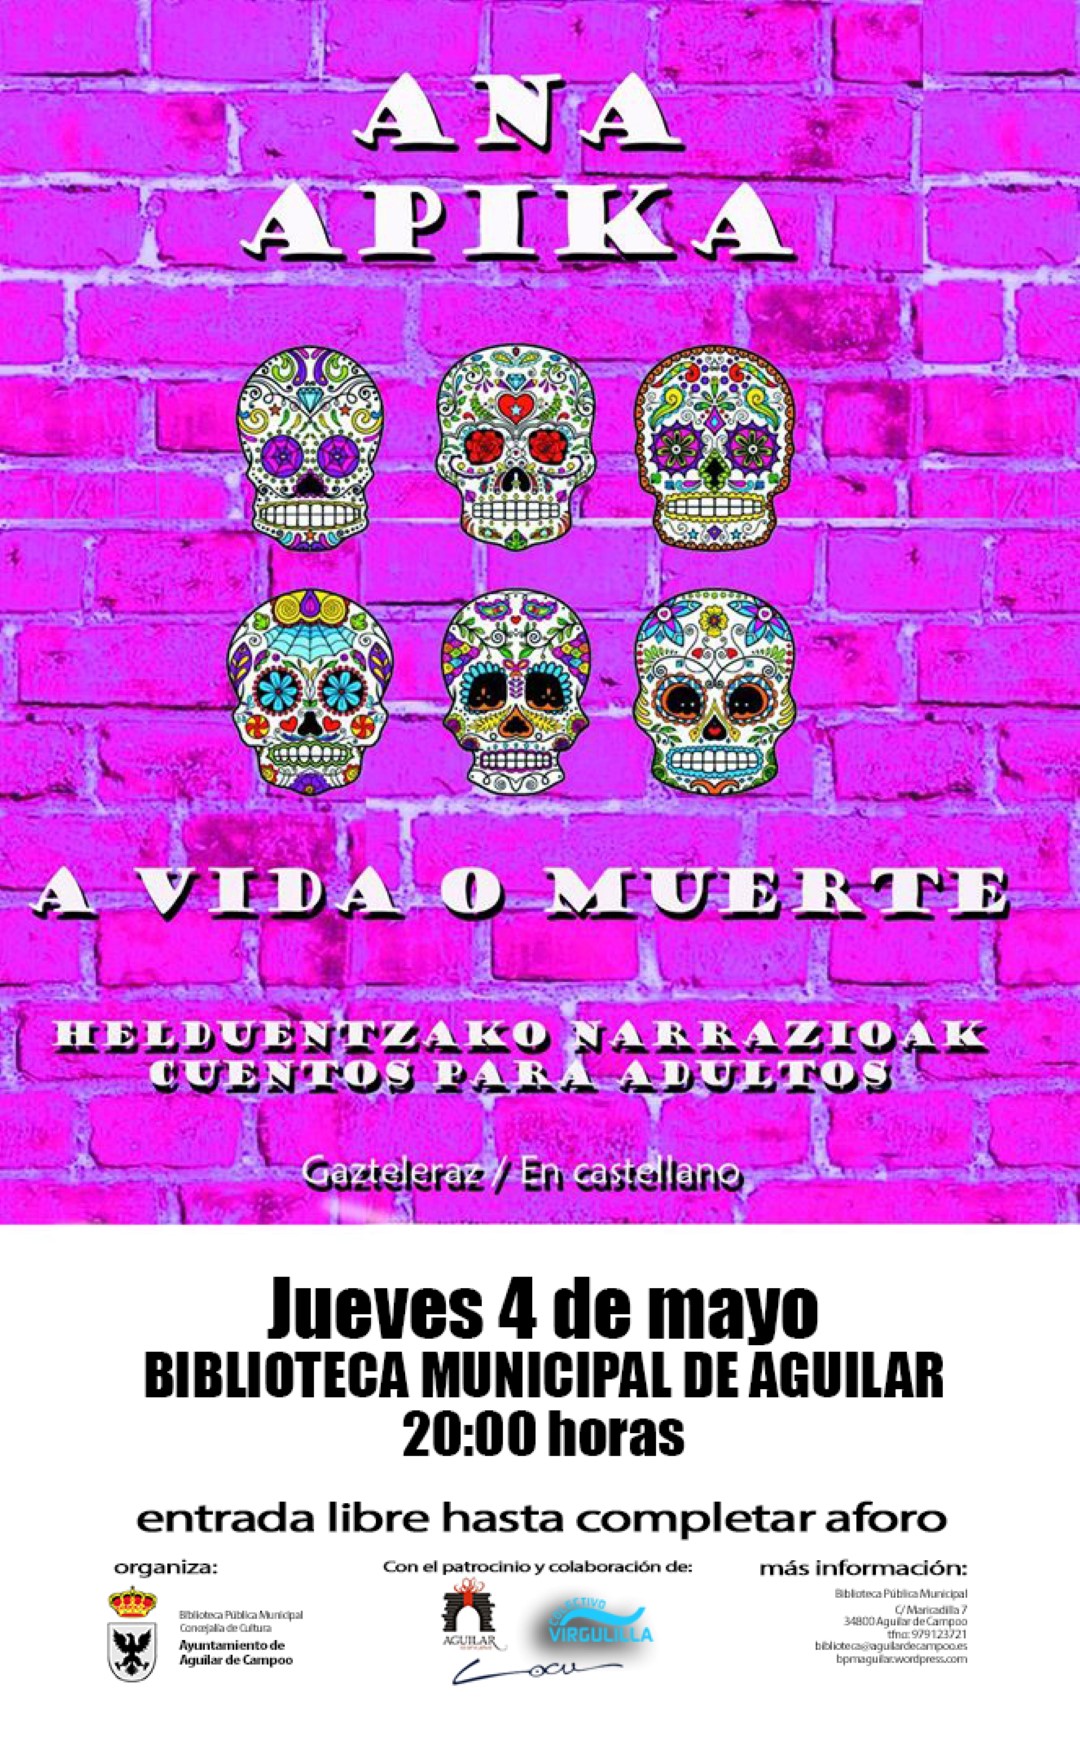 A VIDA O MUERTE.cartel Aguilar de Campoo (Large)